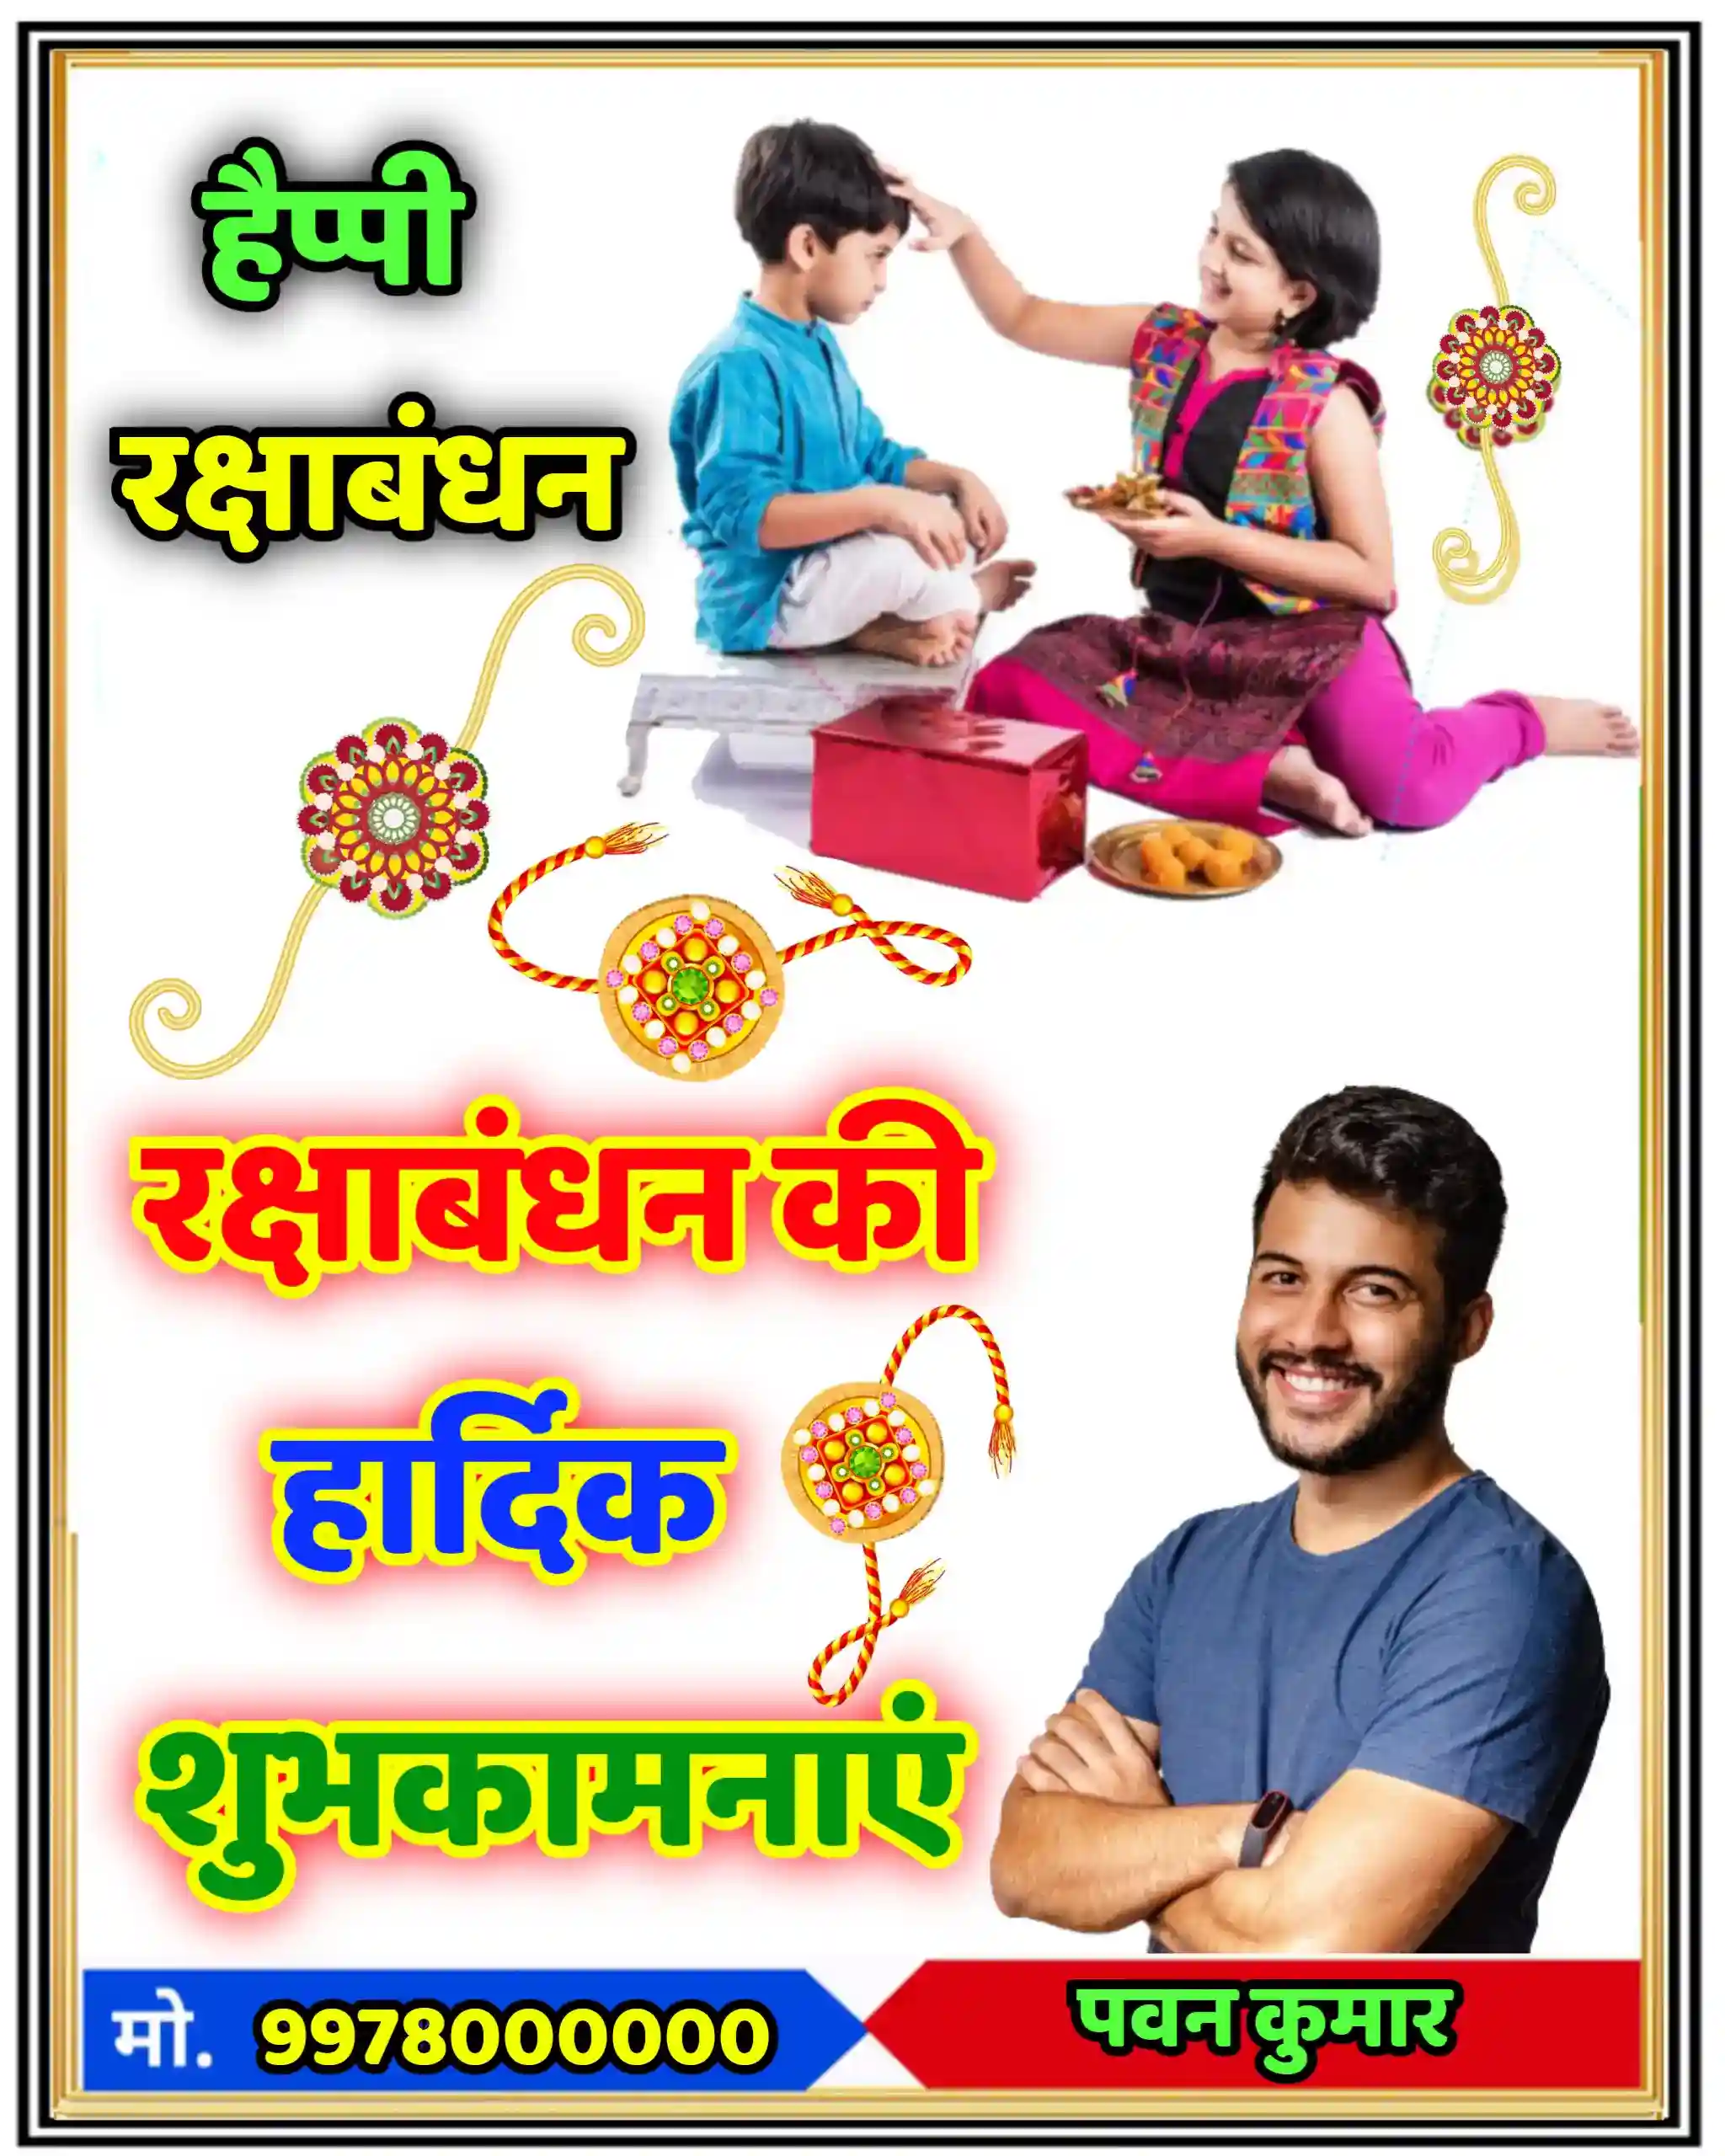 raksha bandhan poster background download